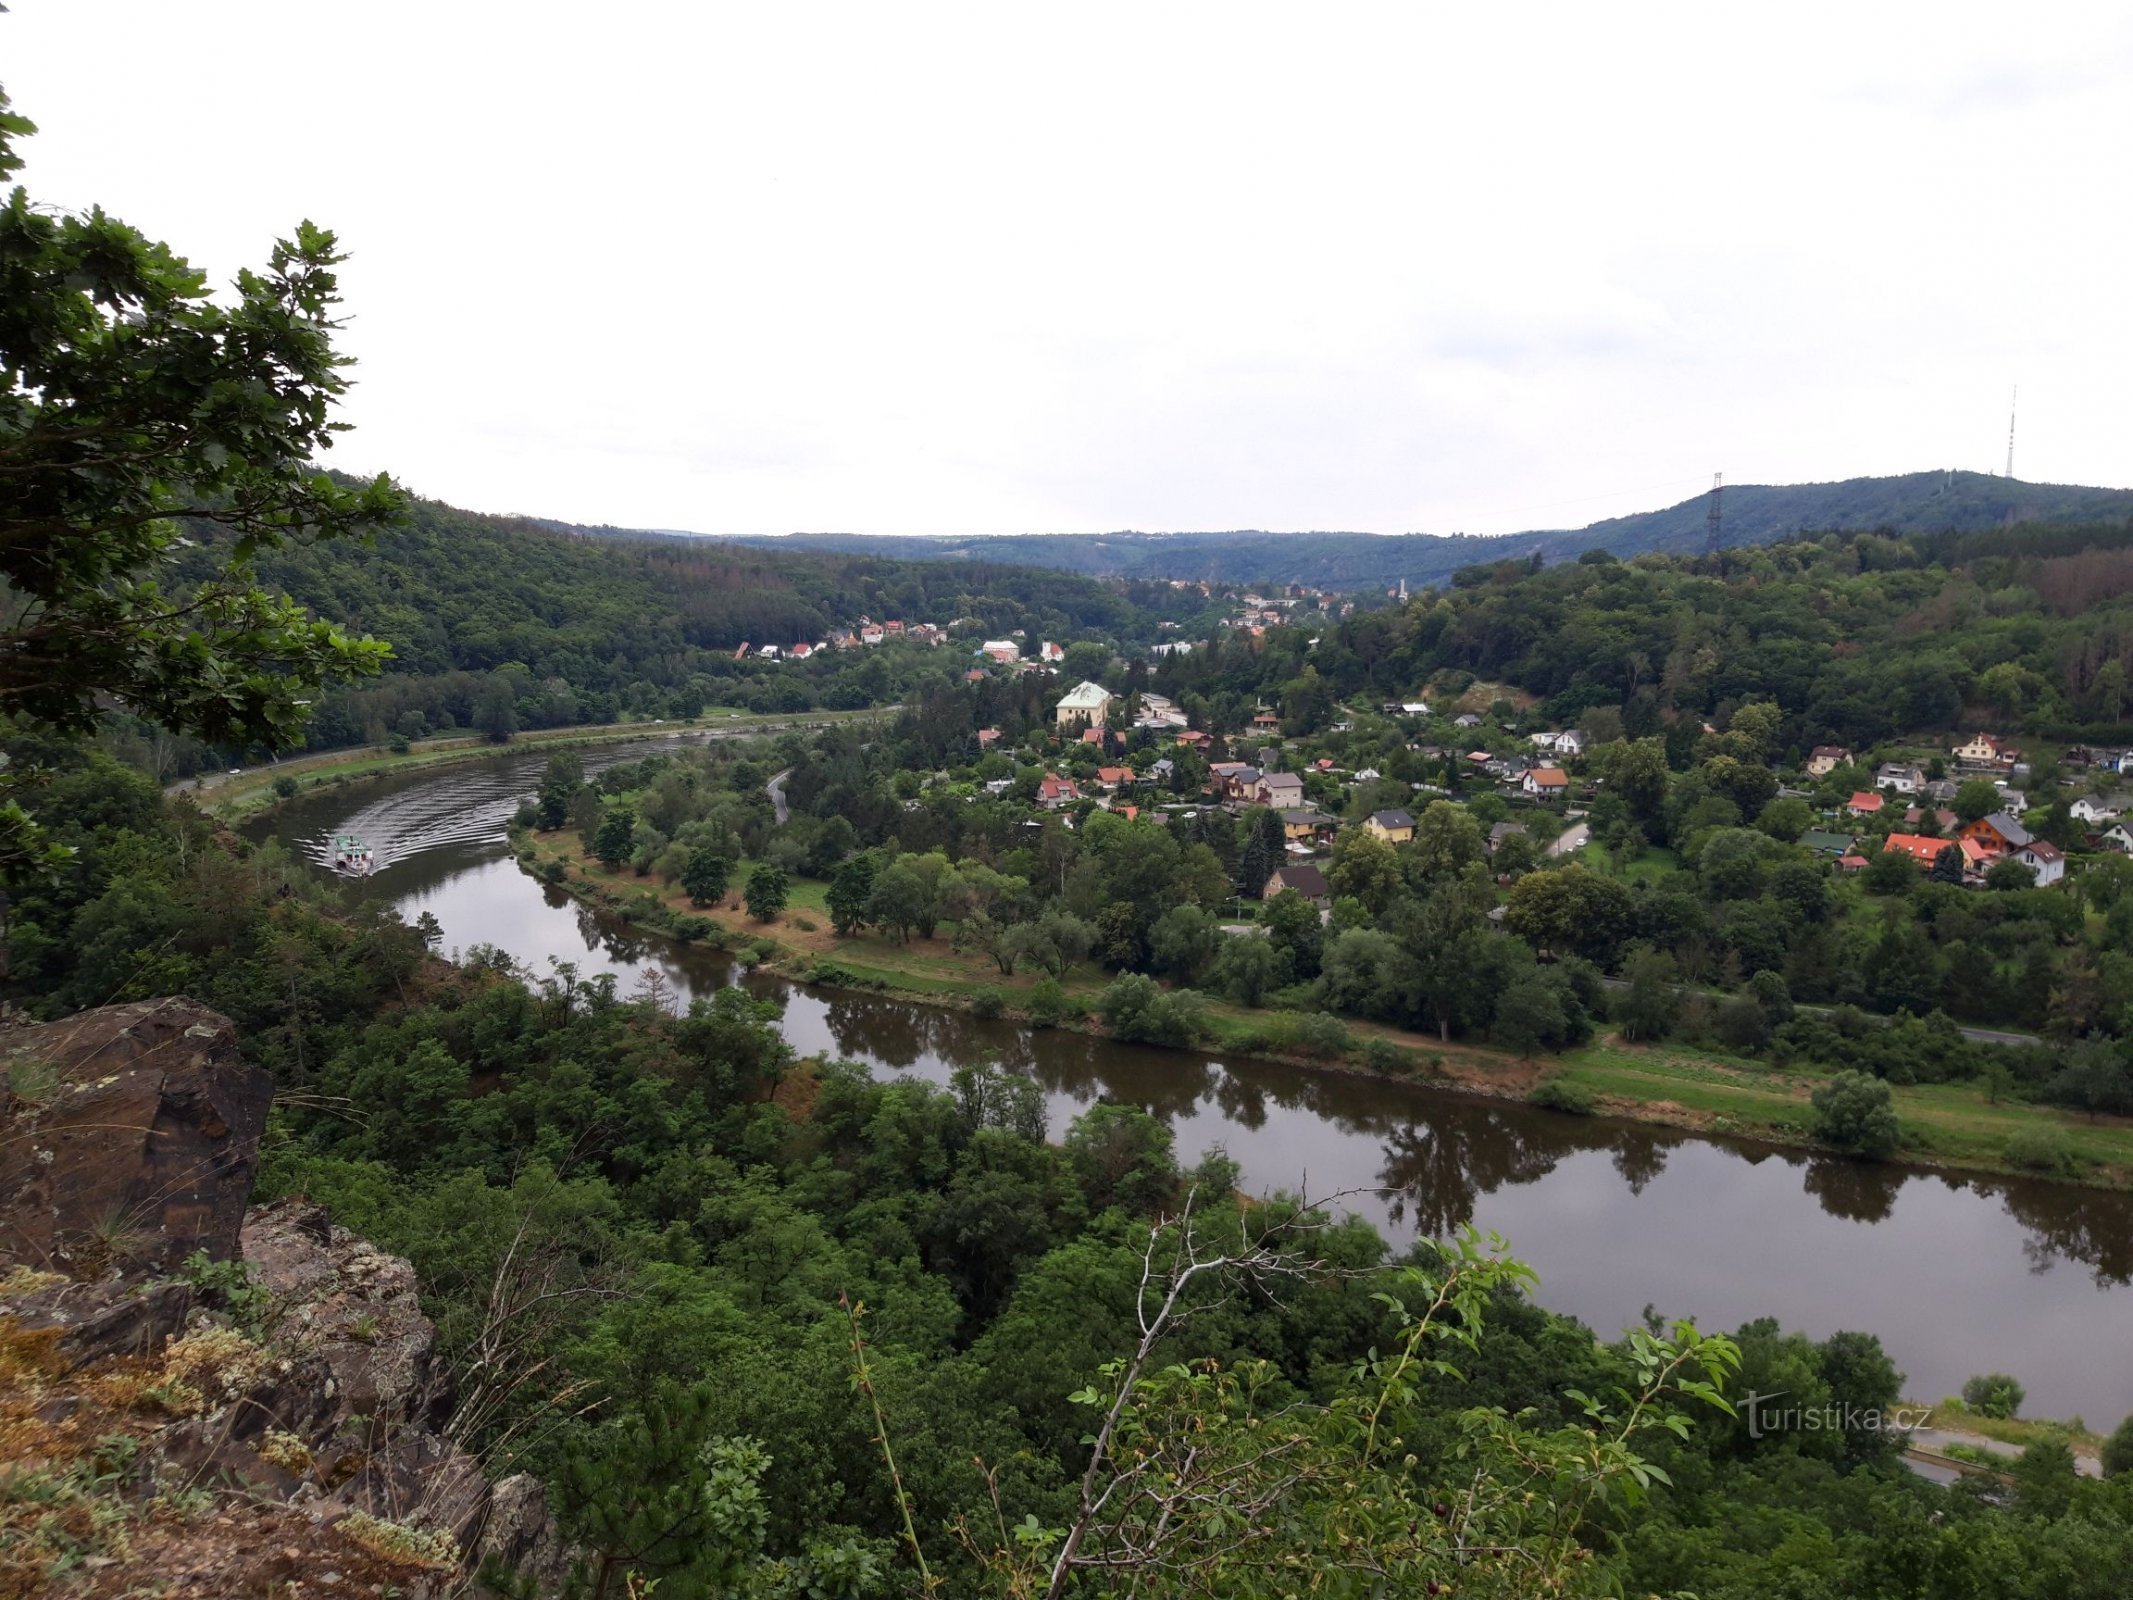 Vltava – utsiktsplats nära byn Vrané nad Vltavou